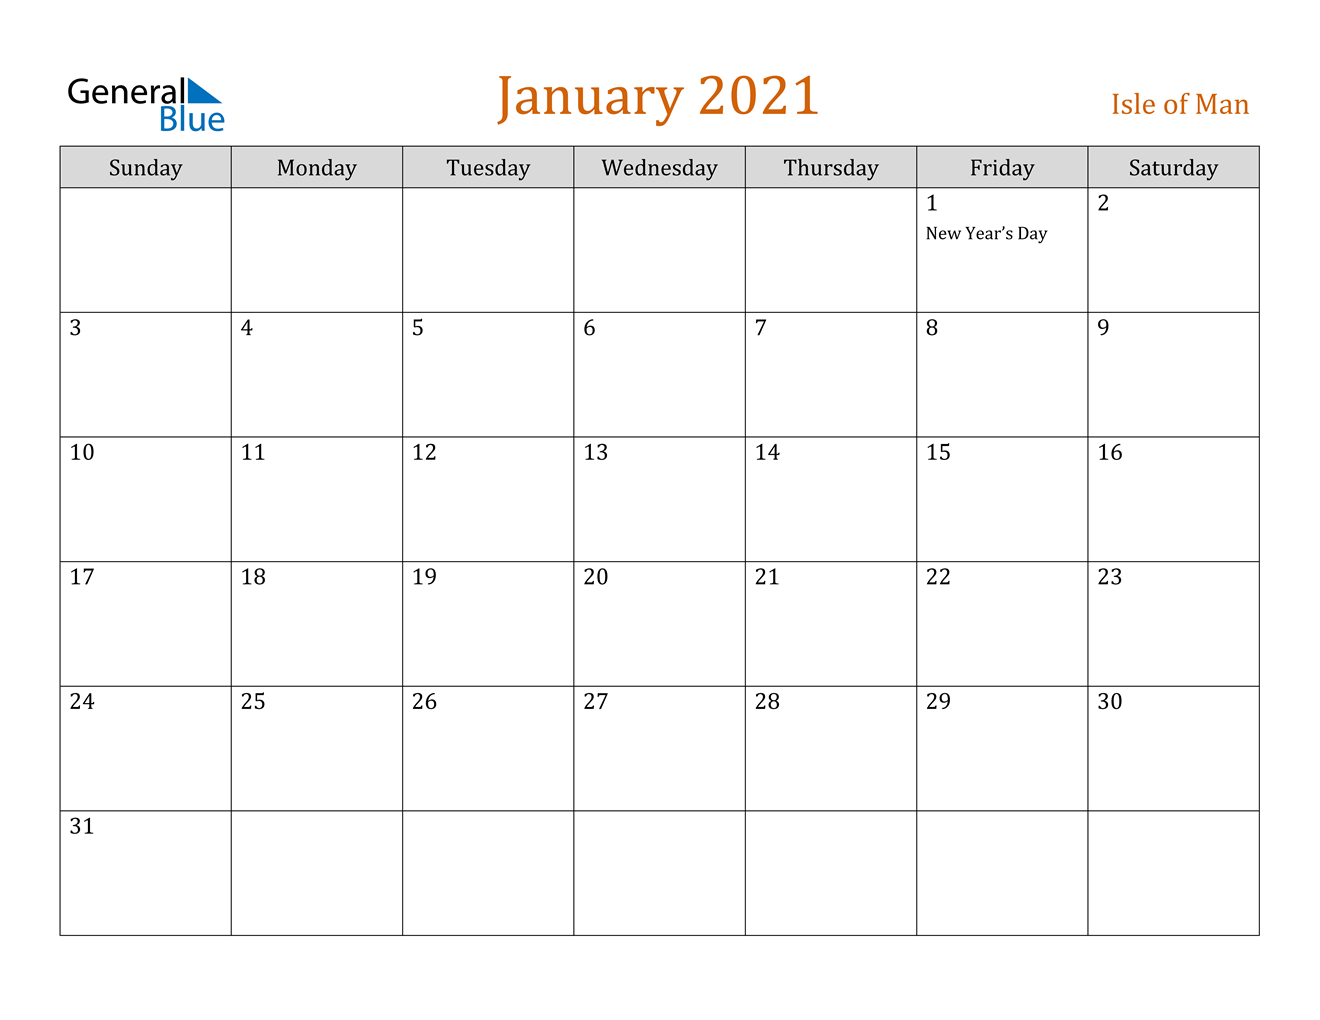 January 2021 Calendar - Isle of Man